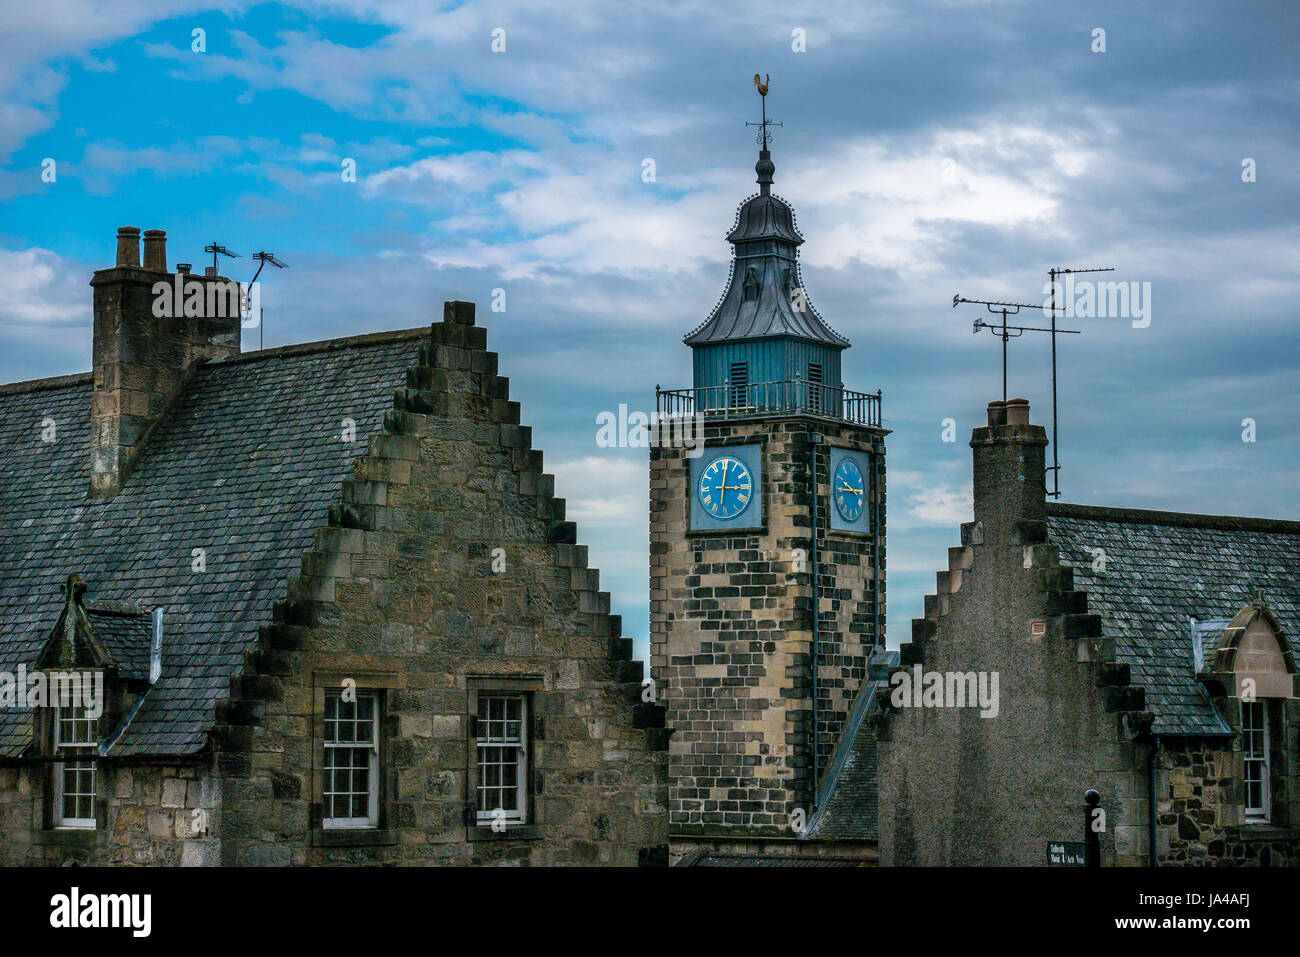 Antichi edifici storici nella città vecchia, Stirling, Scozia, Regno Unito, con l'orologio della torre del Tollbooth e tetti a gradoni contro il cielo blu Foto Stock